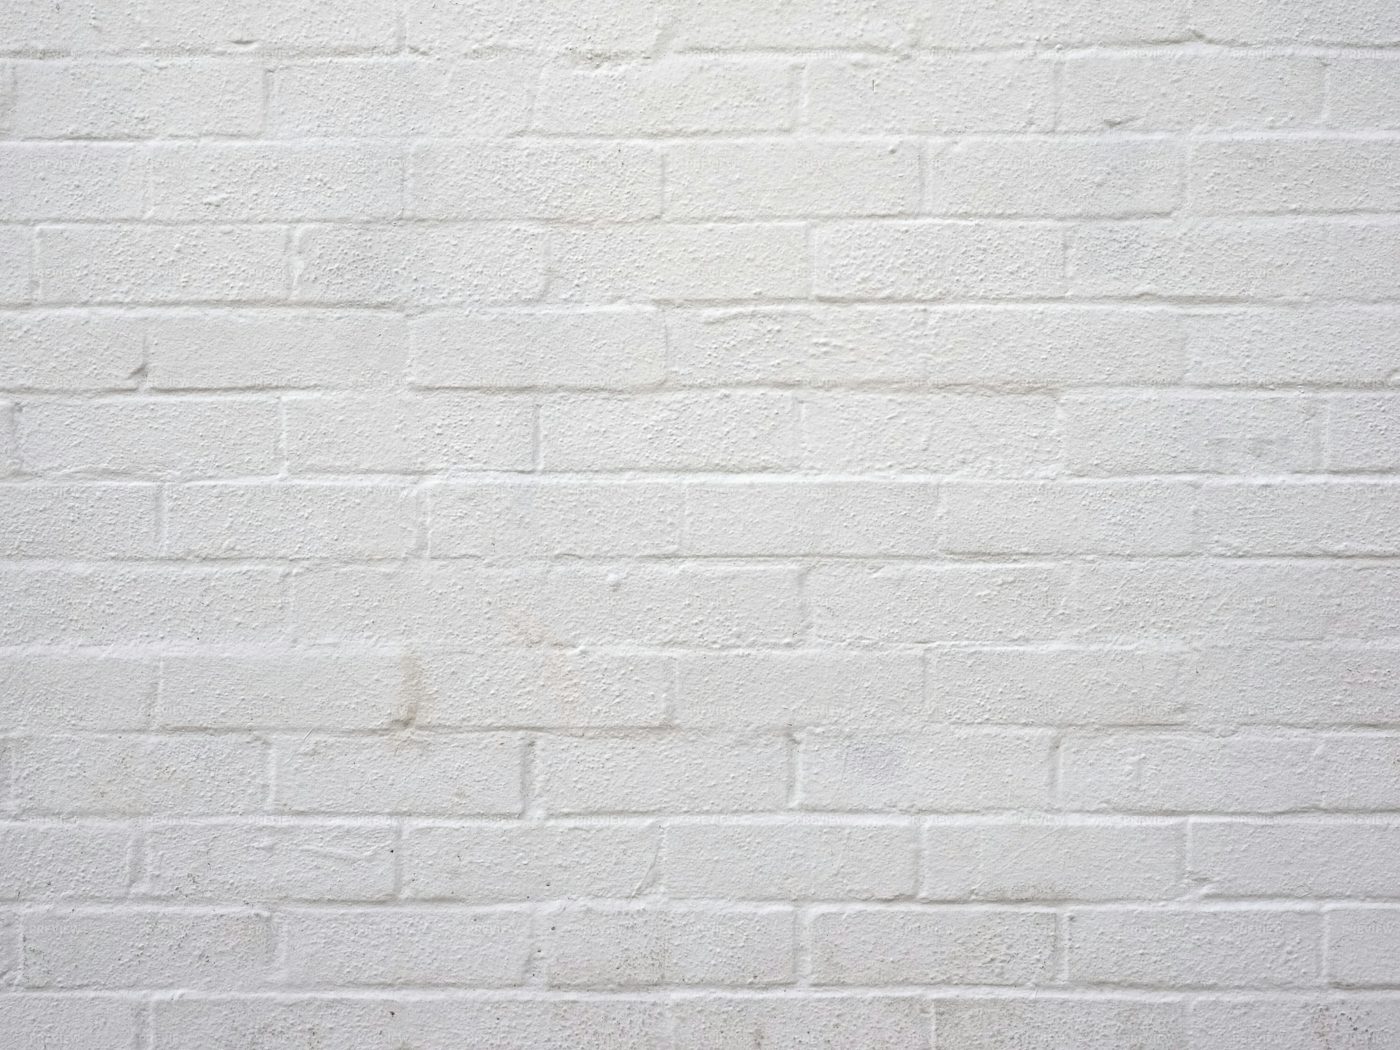 White Brick Texture Stock Photos Motion Array